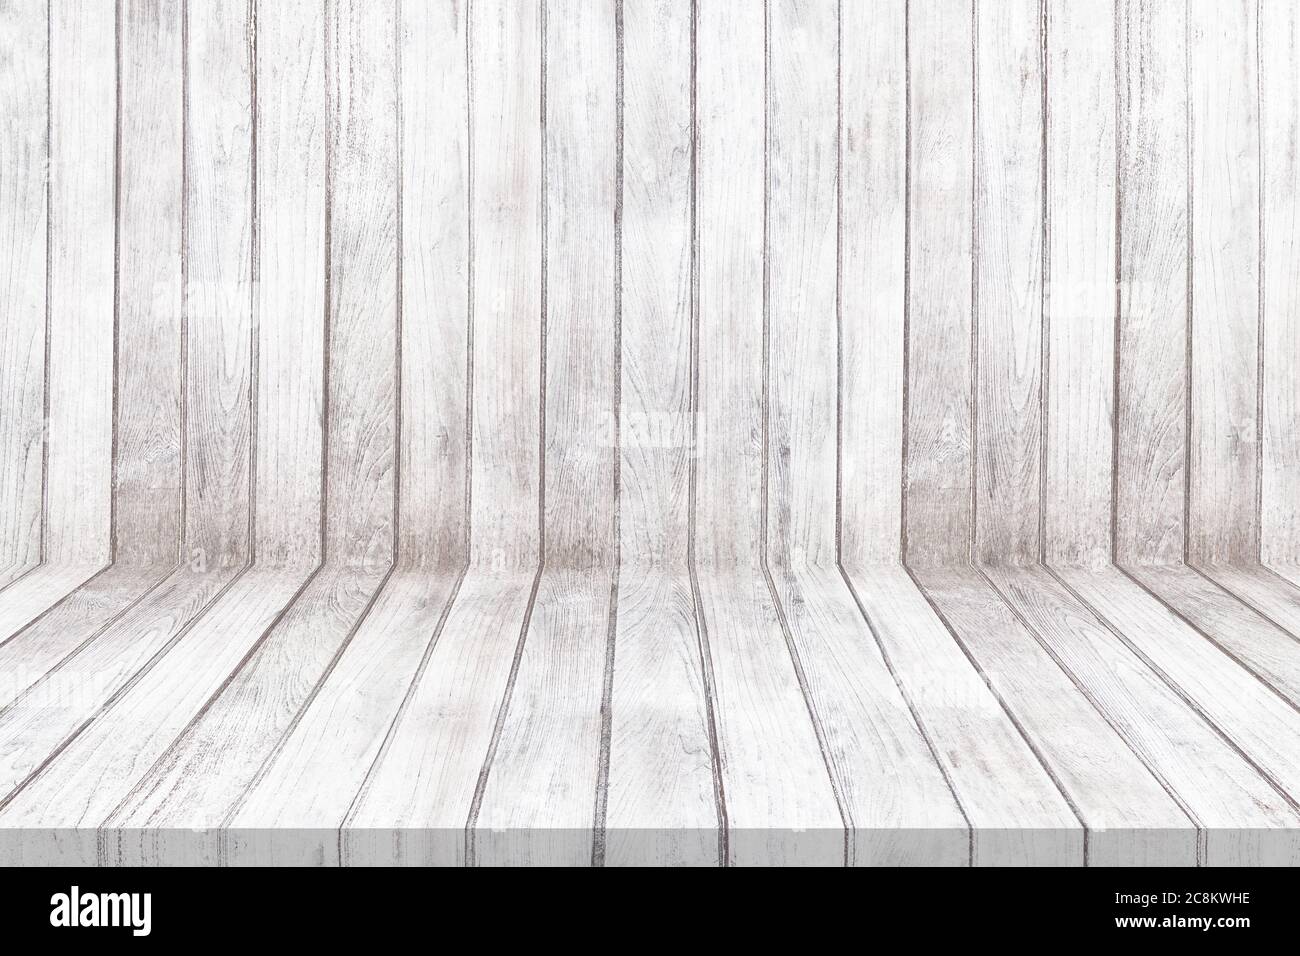 Mẫu gỗ tường trắng cũ và vân gỗ sàn cũ trắng là lựa chọn tuyệt vời để tạo ra không gian sống đầy tính thẩm mỹ. Với màu sắc trắng tinh khôi cùng sự kết hợp với vân gỗ trang nhã, không gian sống của bạn sẽ trở nên rực rỡ hơn bao giờ hết. Hãy cùng xem hình ảnh liên quan để thấy rõ được sự độc đáo của nó.